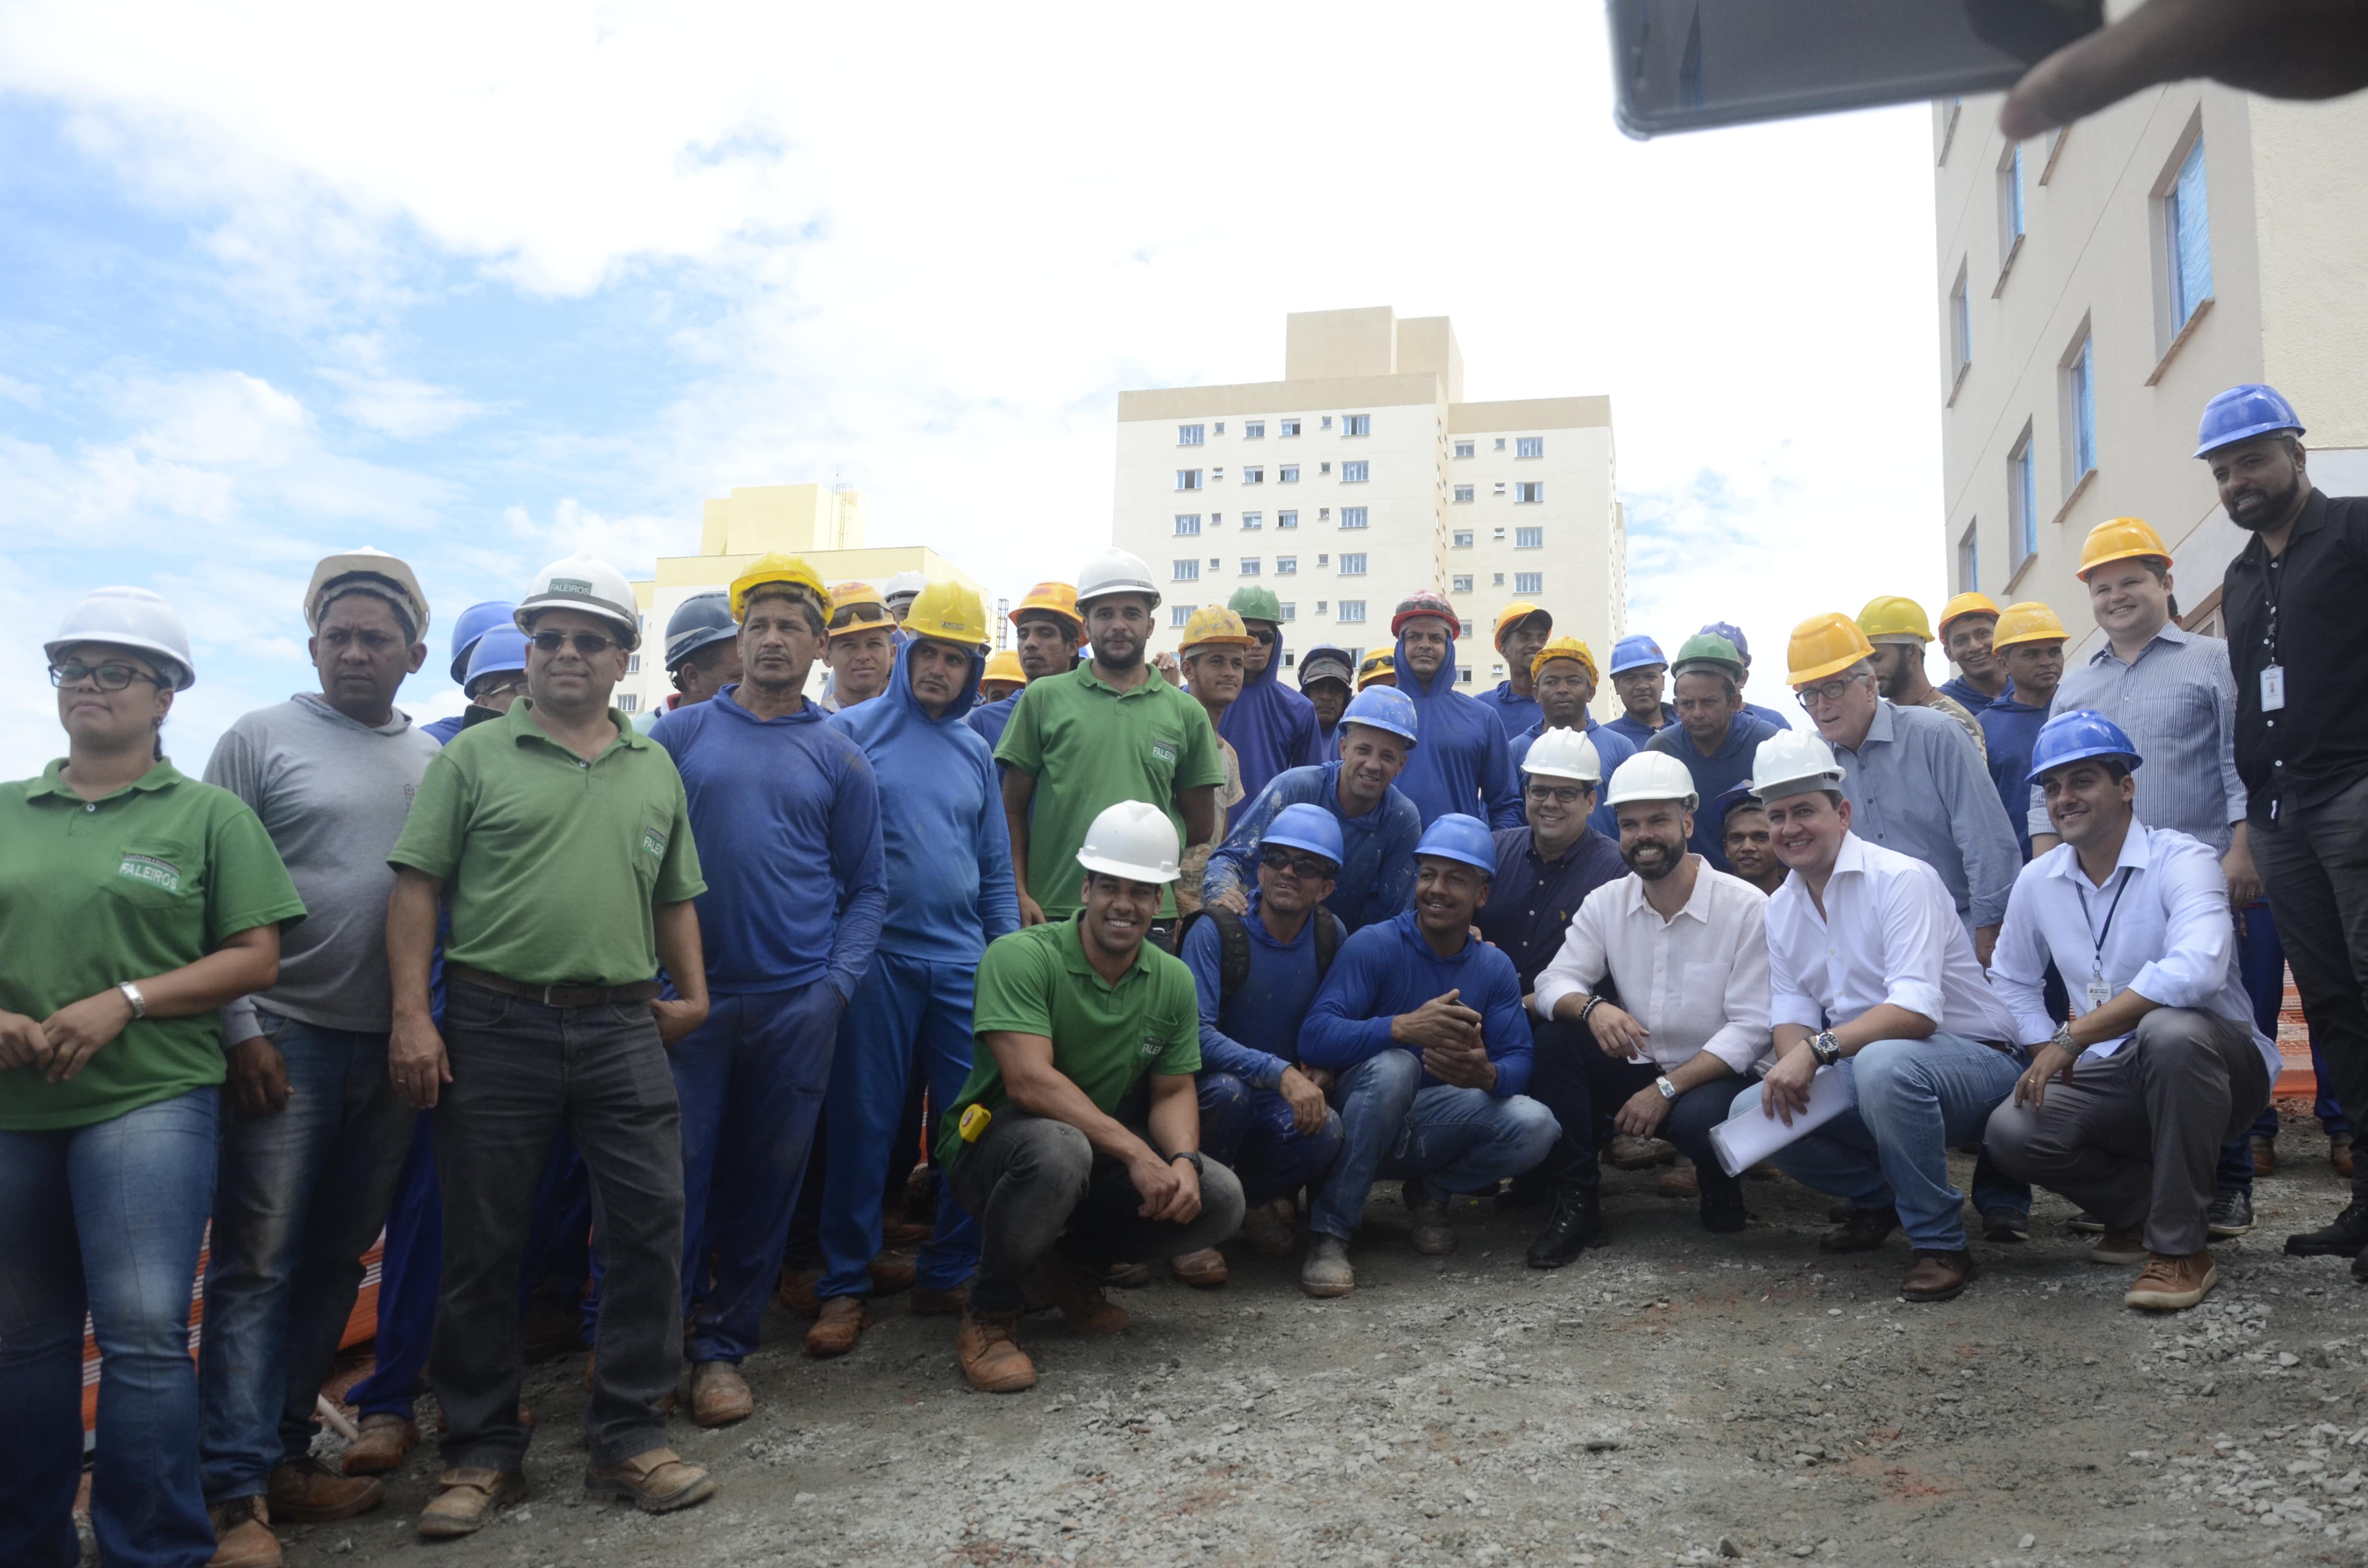 O Prefeito de São Paulo Bruno Covas e Presidente da Cohab Alexsandro Peixe posam junto aos trabalhadores da obra. Tem cerca de 20 trabalhadores de pé alguns usando verde azul ou cinza.